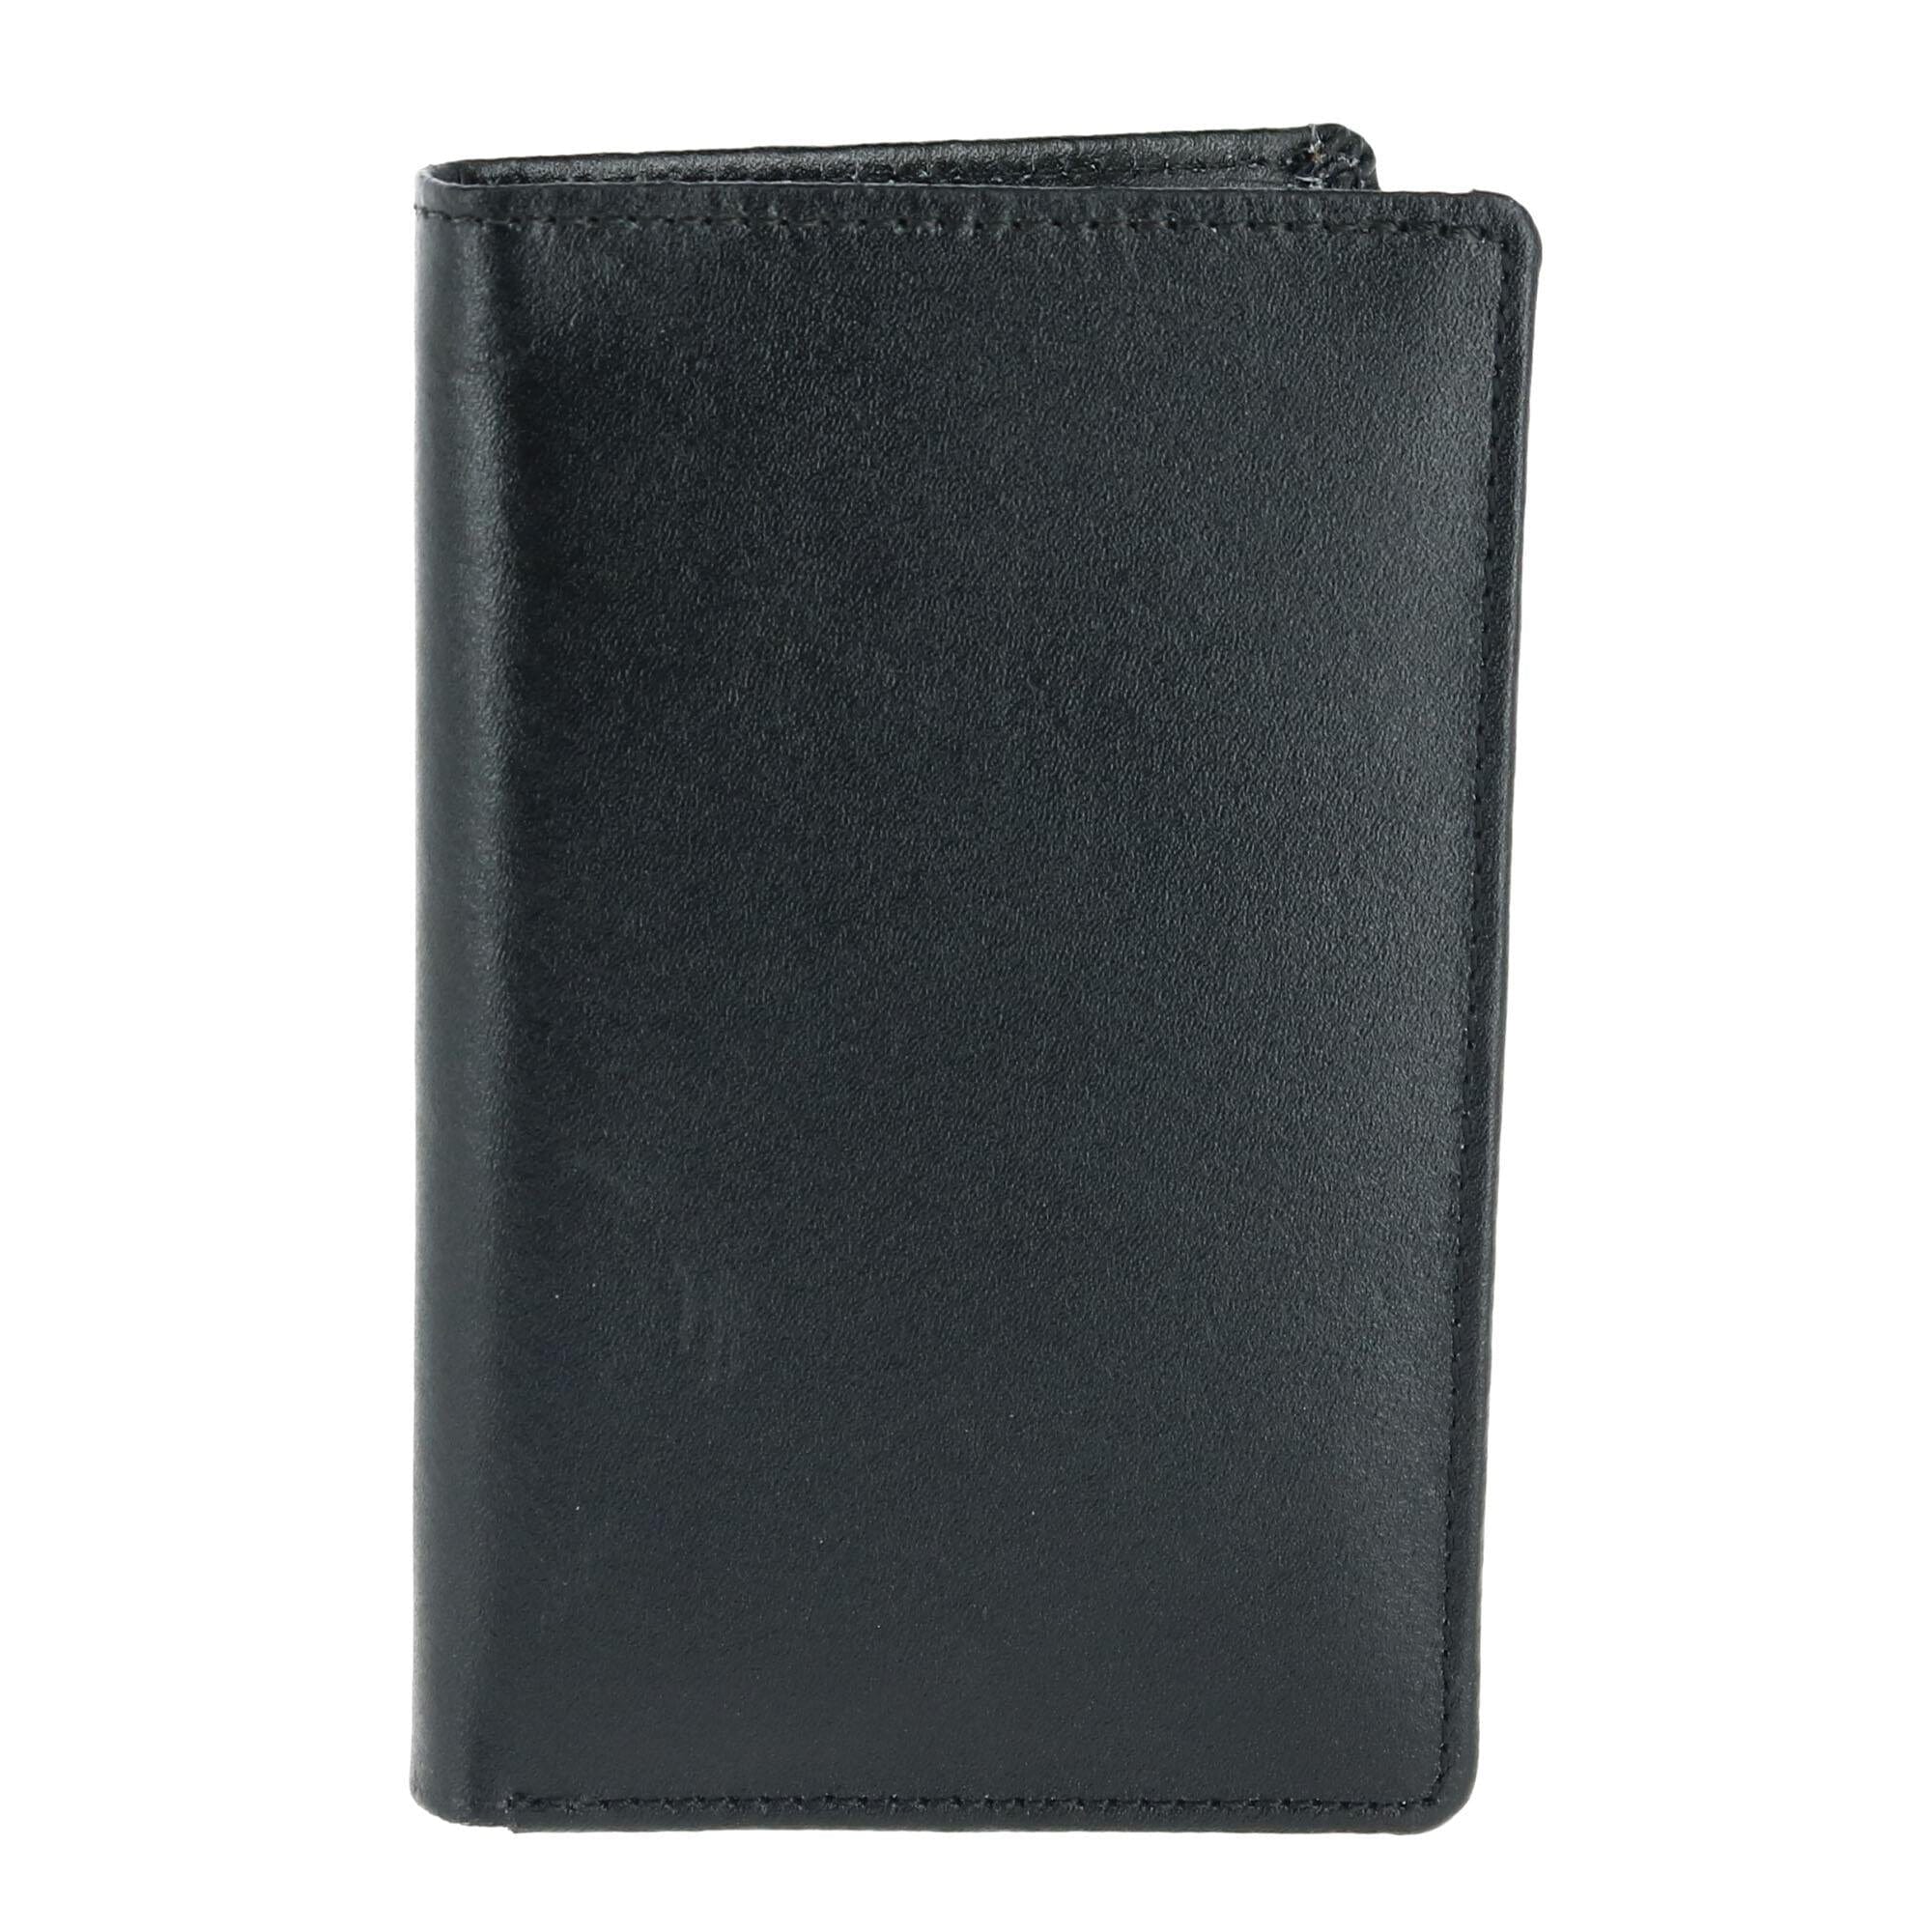 Leather Bifold Badge Holder Wallet by CTM | Badge Holders at BeltOutlet.com